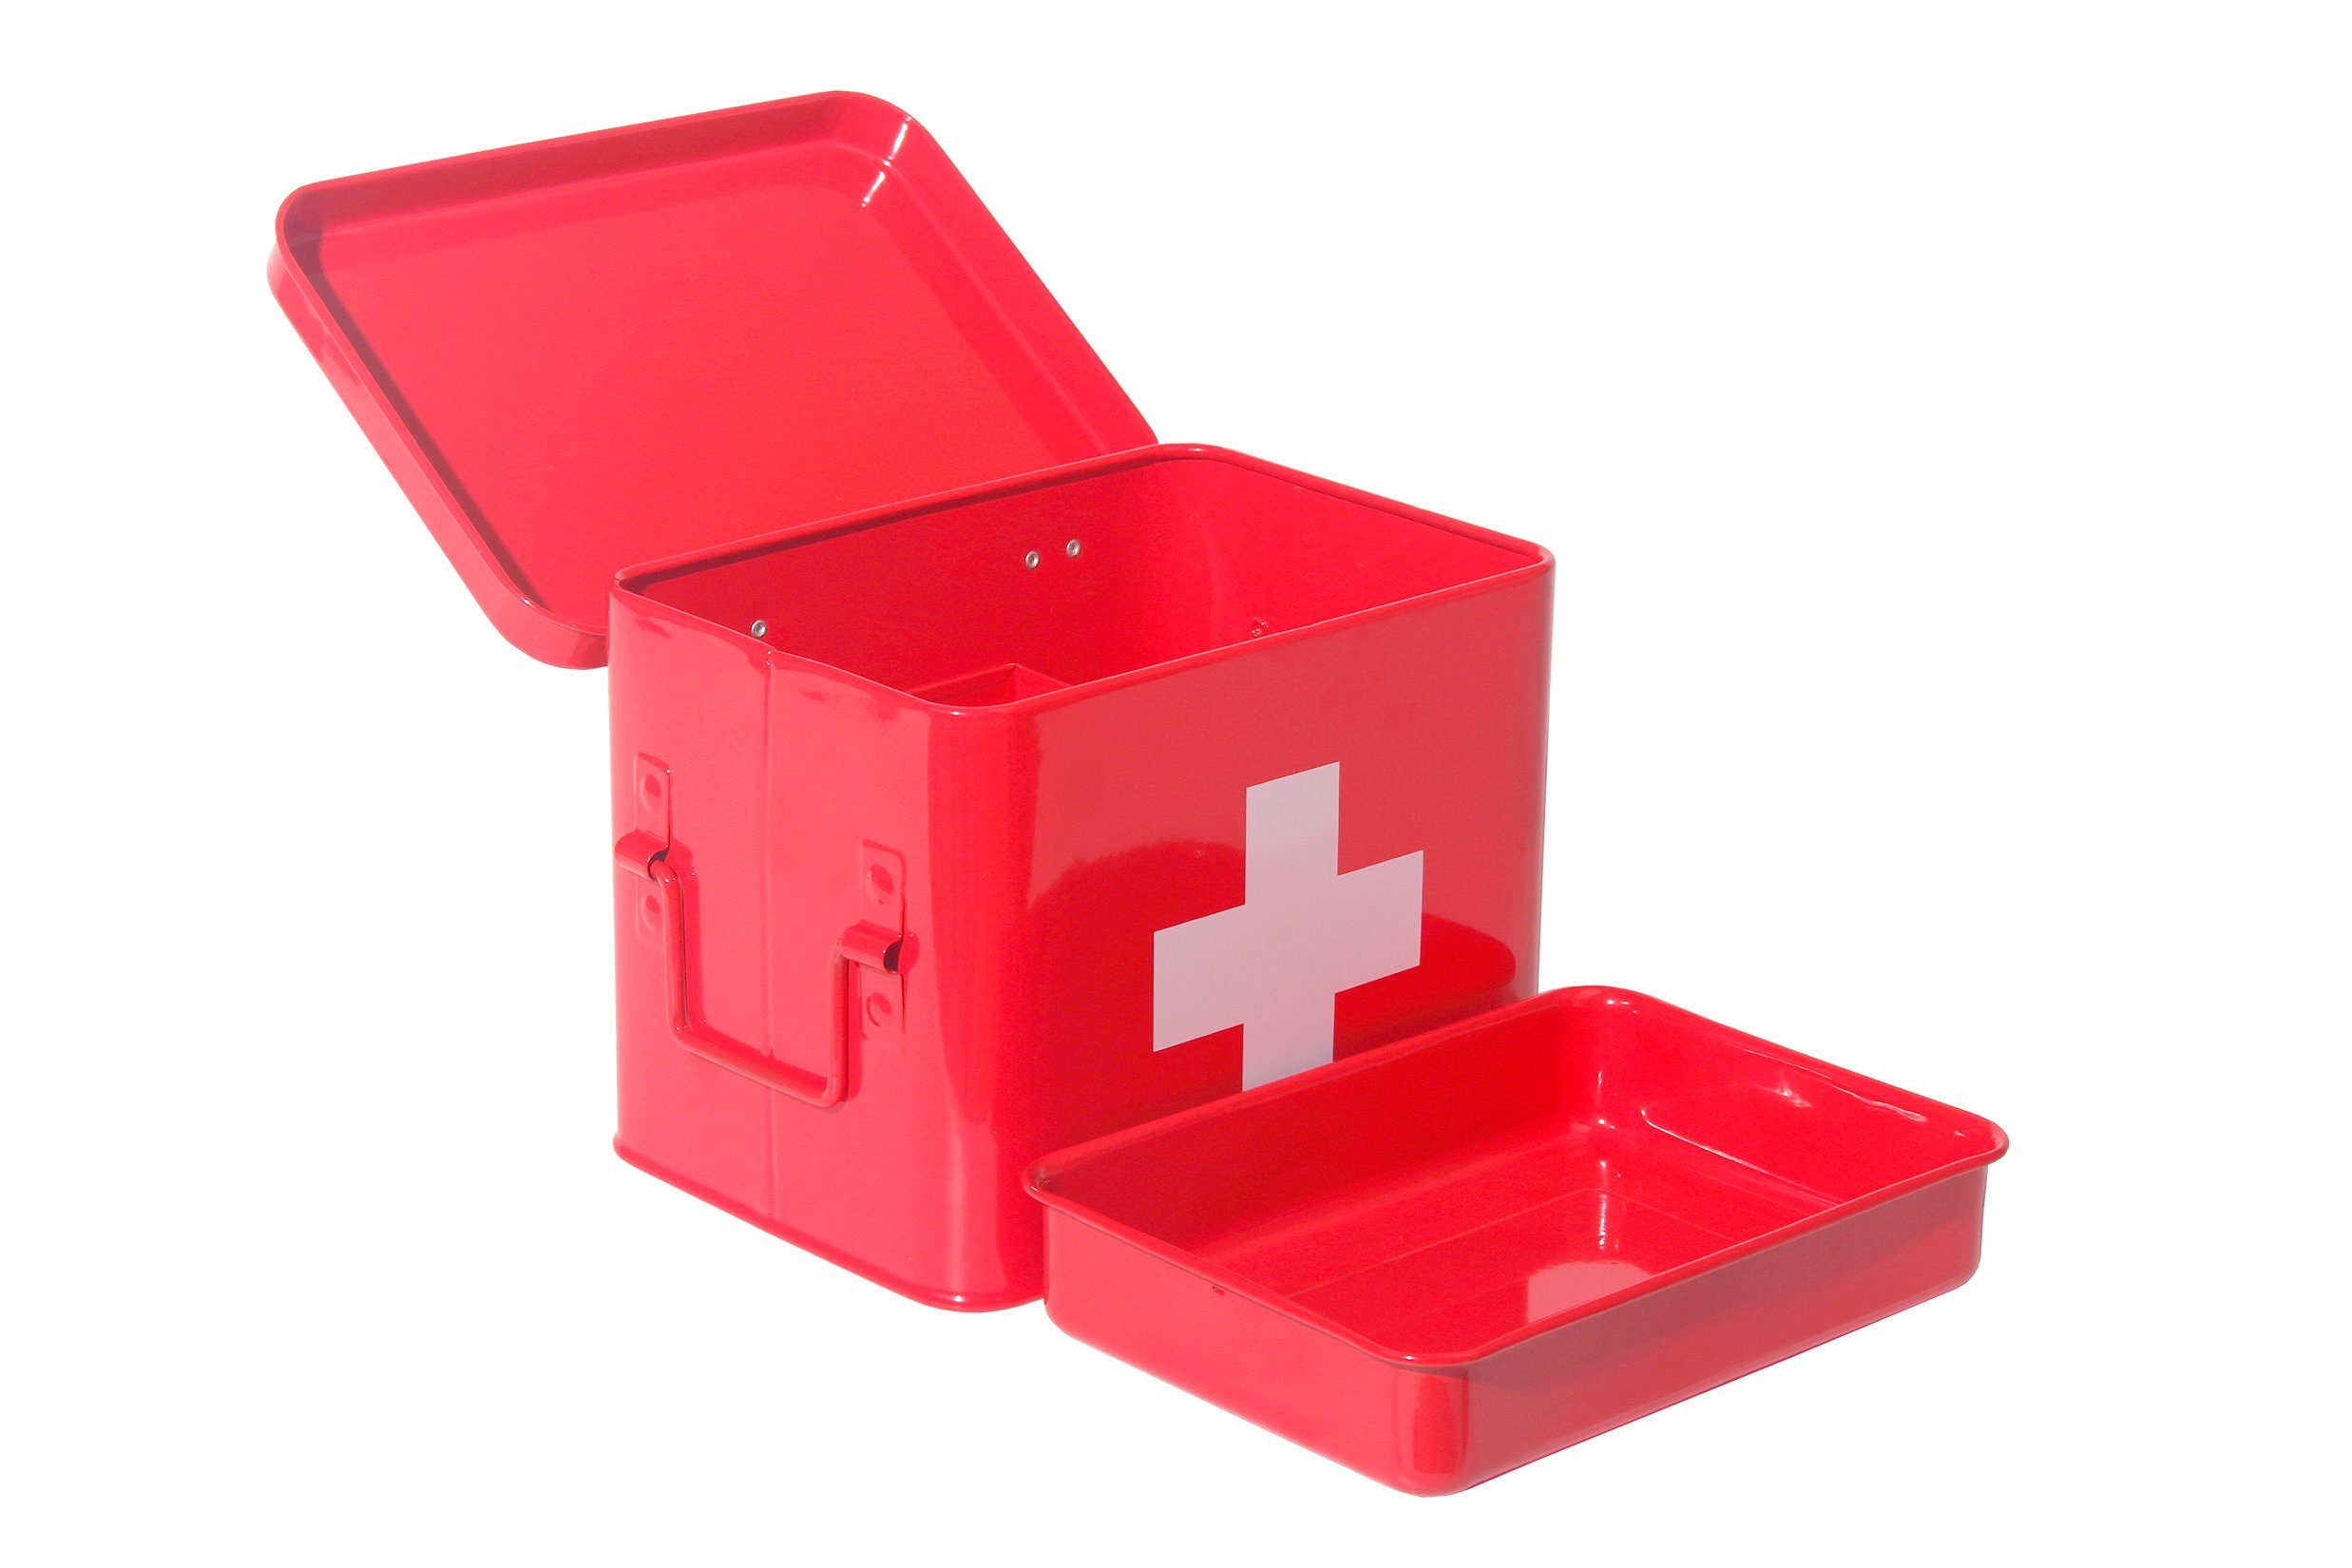 Vorratsdose Medizinschränke Metall,Erste Kasten Arzneischrank (YX1002), Hilfe Medikamentenbox,Medizin Zedelmaier Box Retro, rot-21.5*16*16cm Medizinkoffer Schrank,